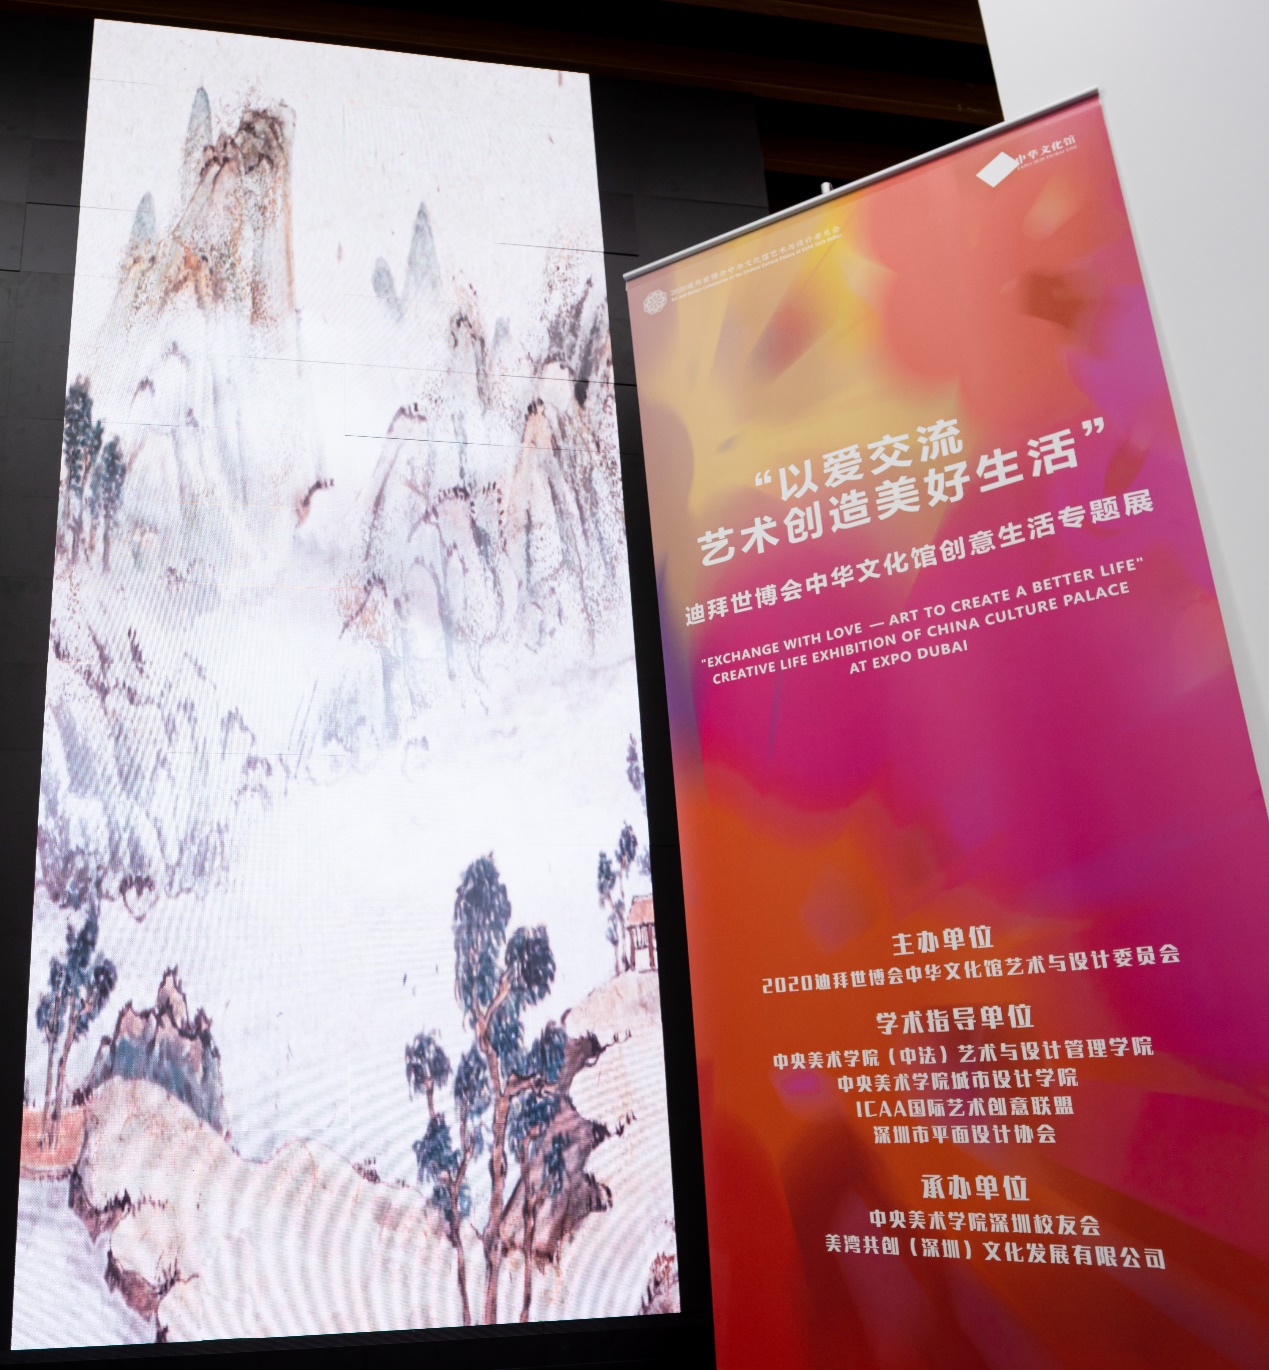 2020迪拜世博會中華文化館創意生活專題展在迪拜世博會中華文化館亮相